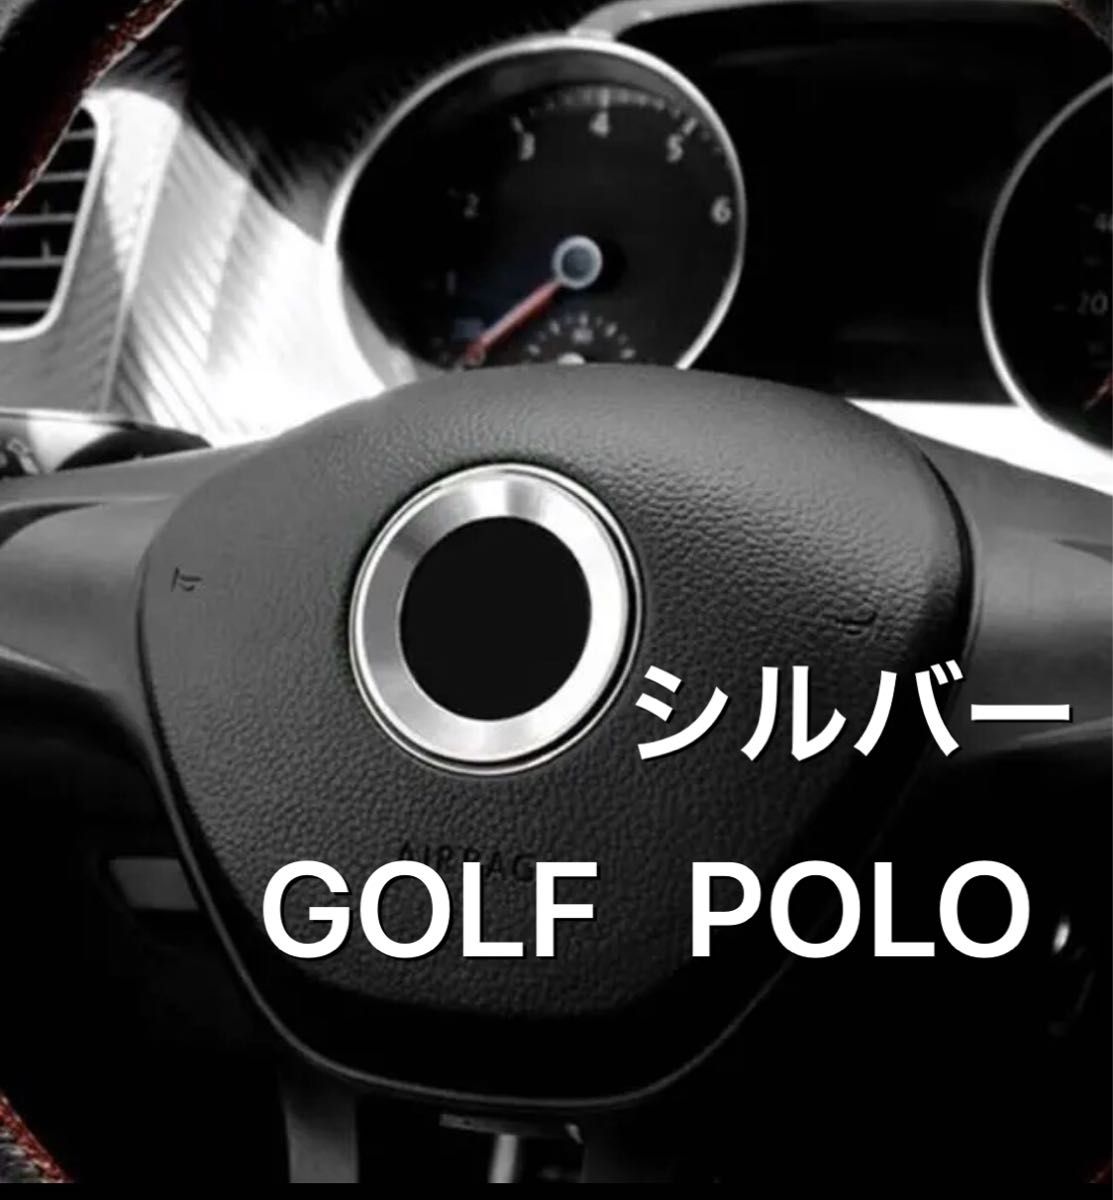 VW GOLF POLO ロゴ エンブレム リングカバー フォルクスワーゲン 銀